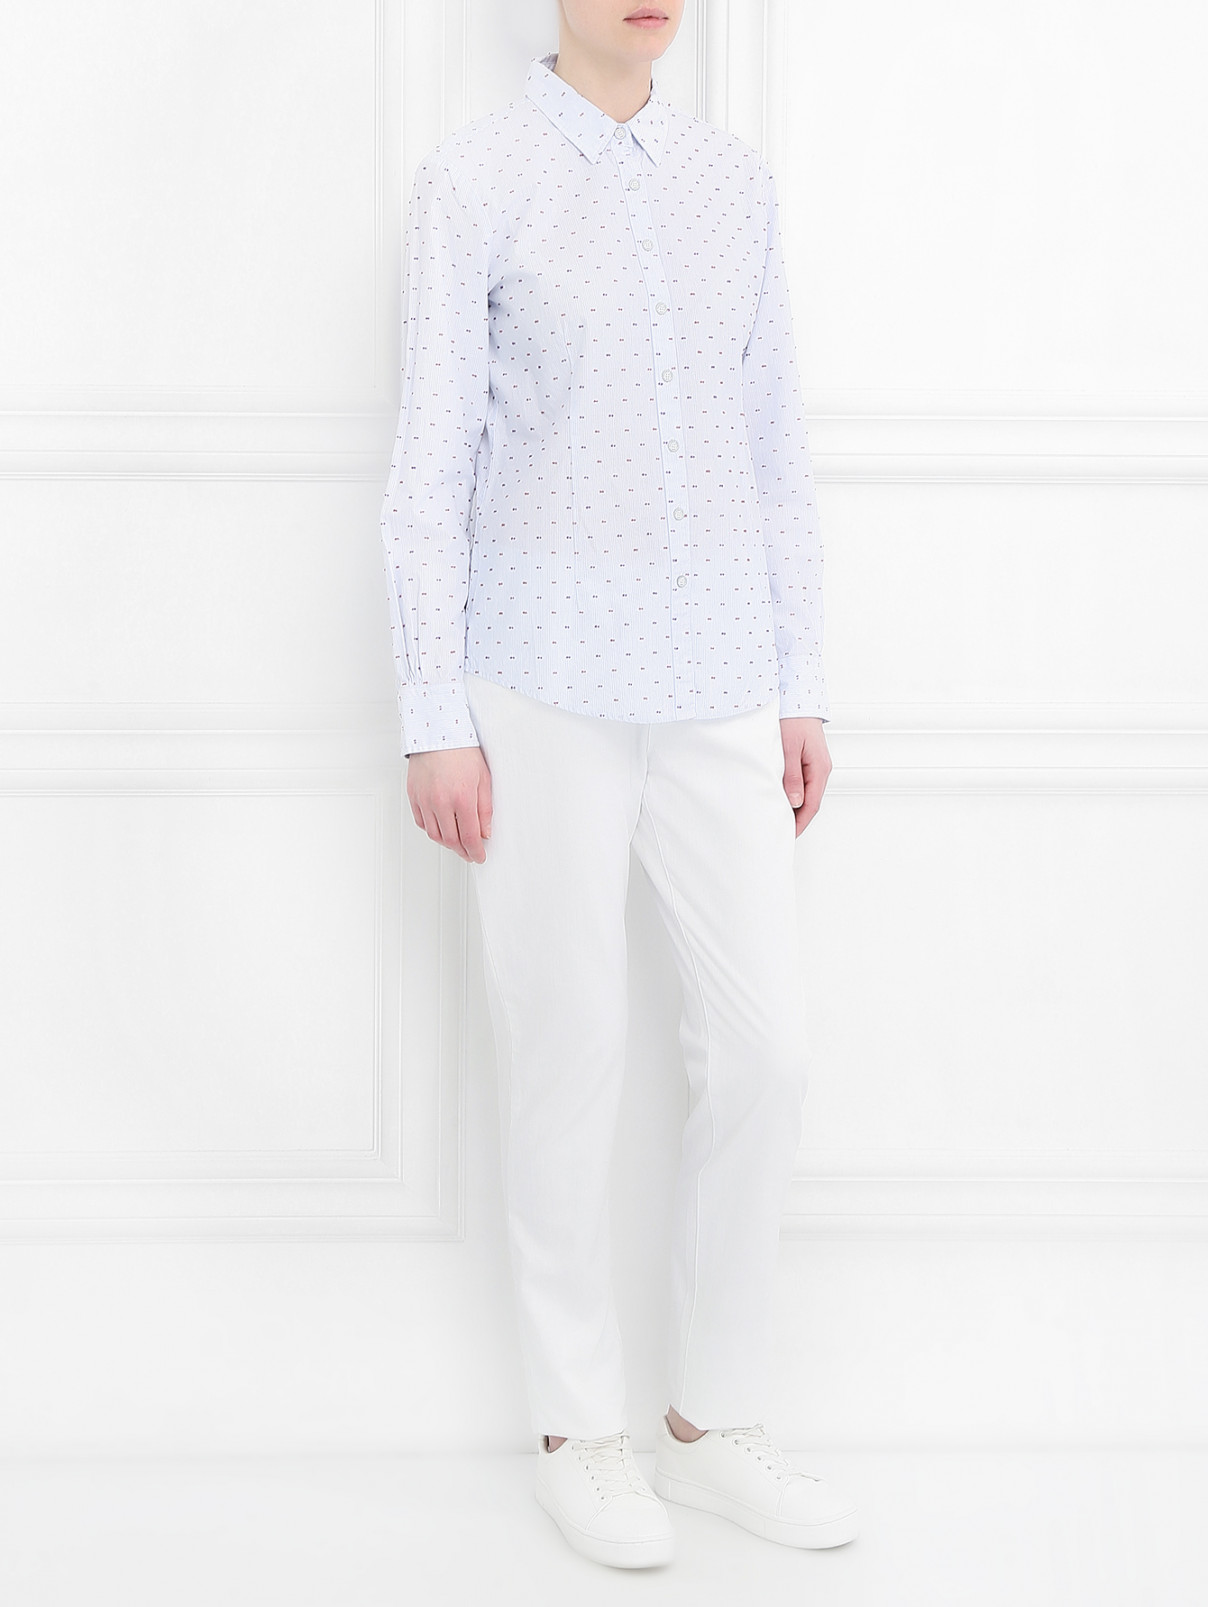 Джинсы прямого кроя с клепками Armani Jeans  –  Модель Общий вид  – Цвет:  Белый